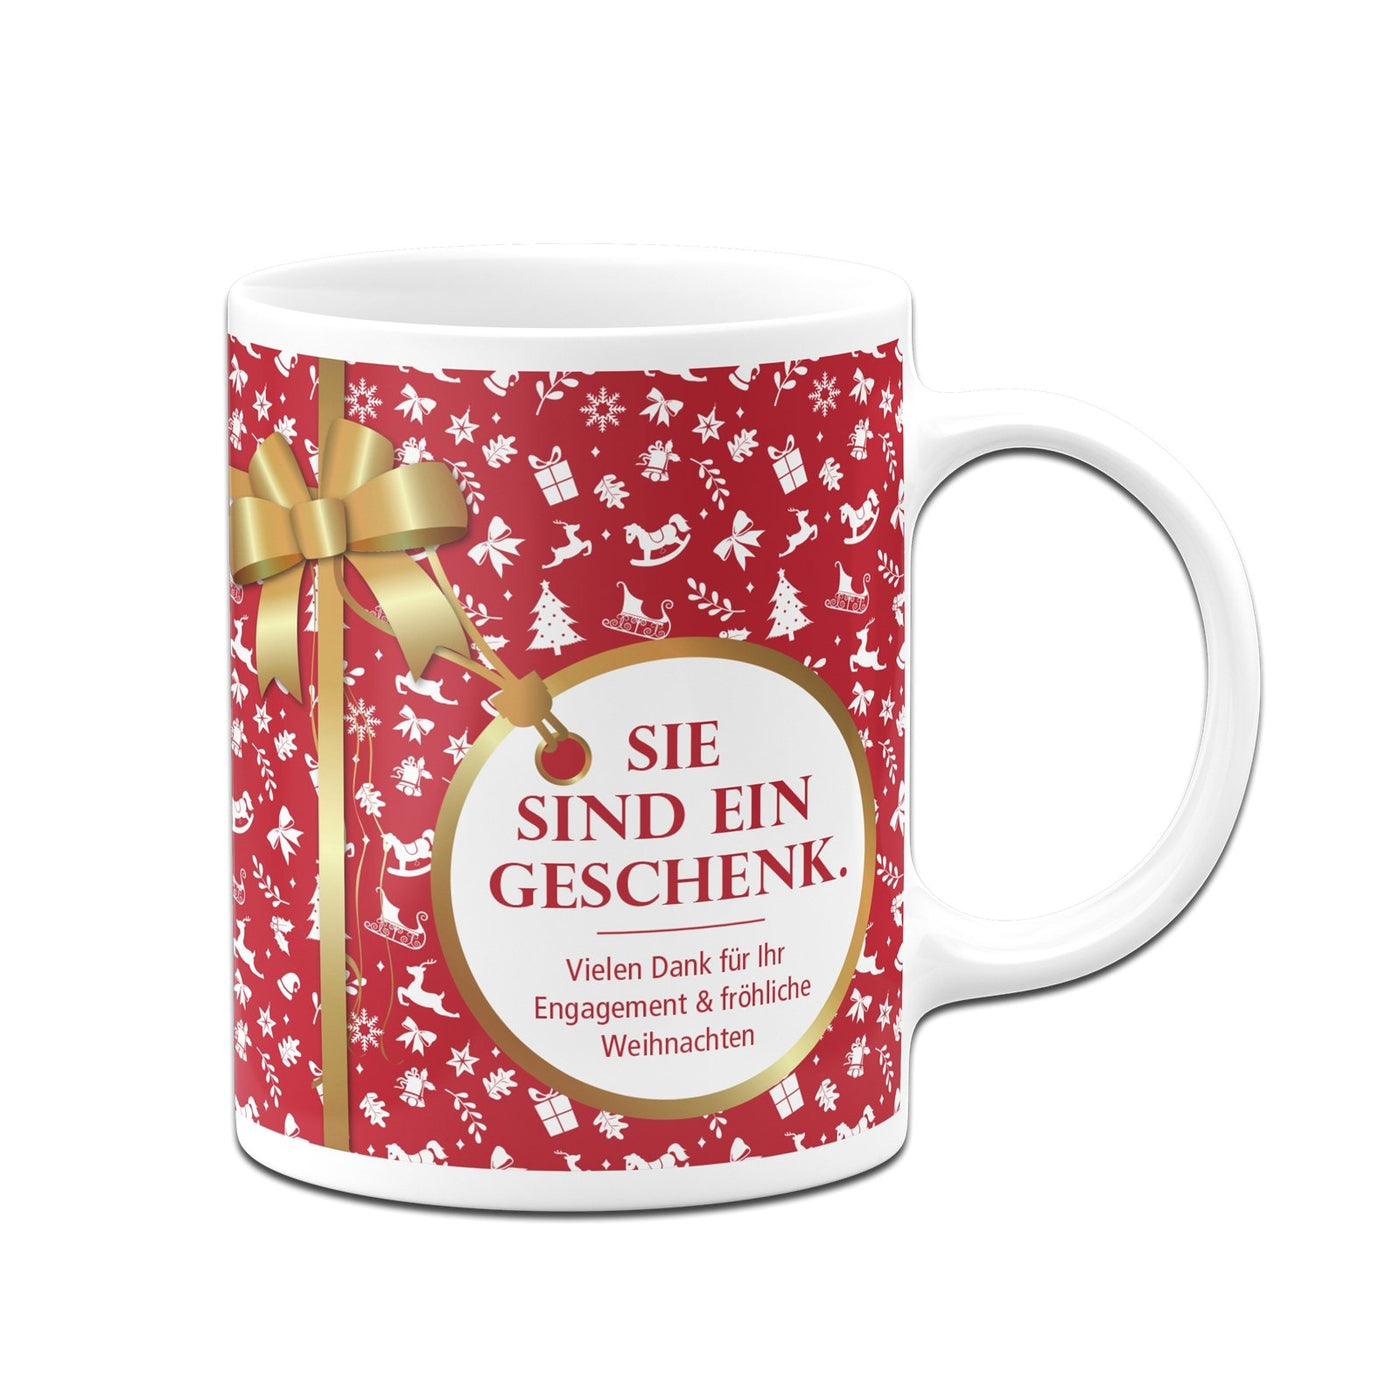 Bild: Tasse - Sie sind ein Geschenk. - Weihnachten (Aufdruck rot) Geschenkidee